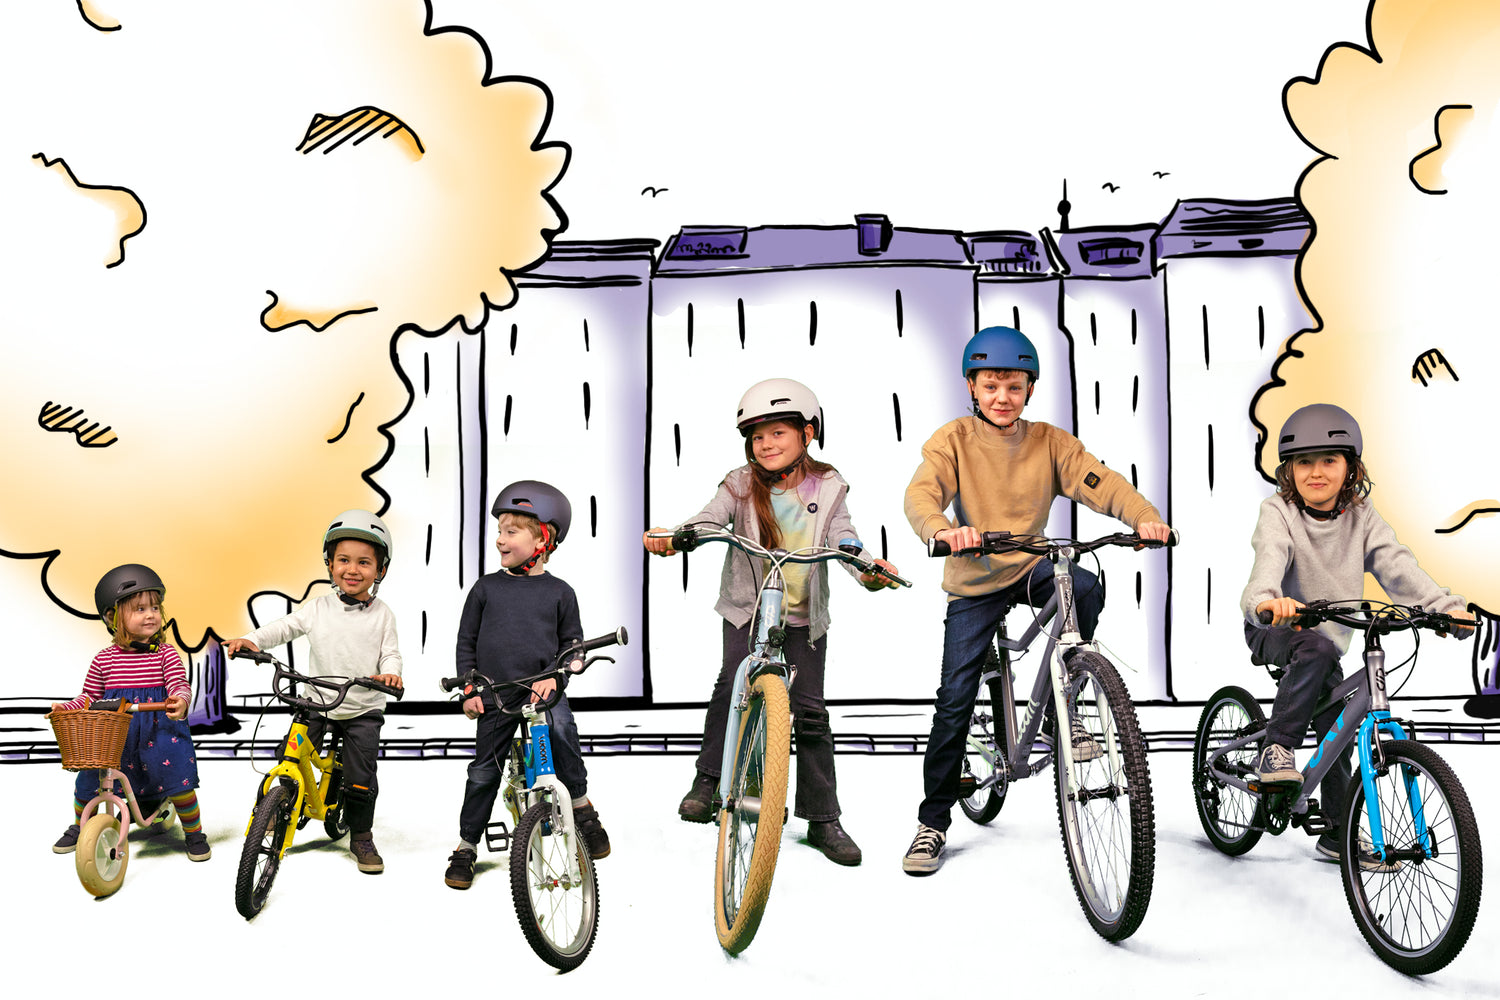 6 Kinder auf Fahrrädern der Marken Puky, Academy, und Woom vor Skyline 